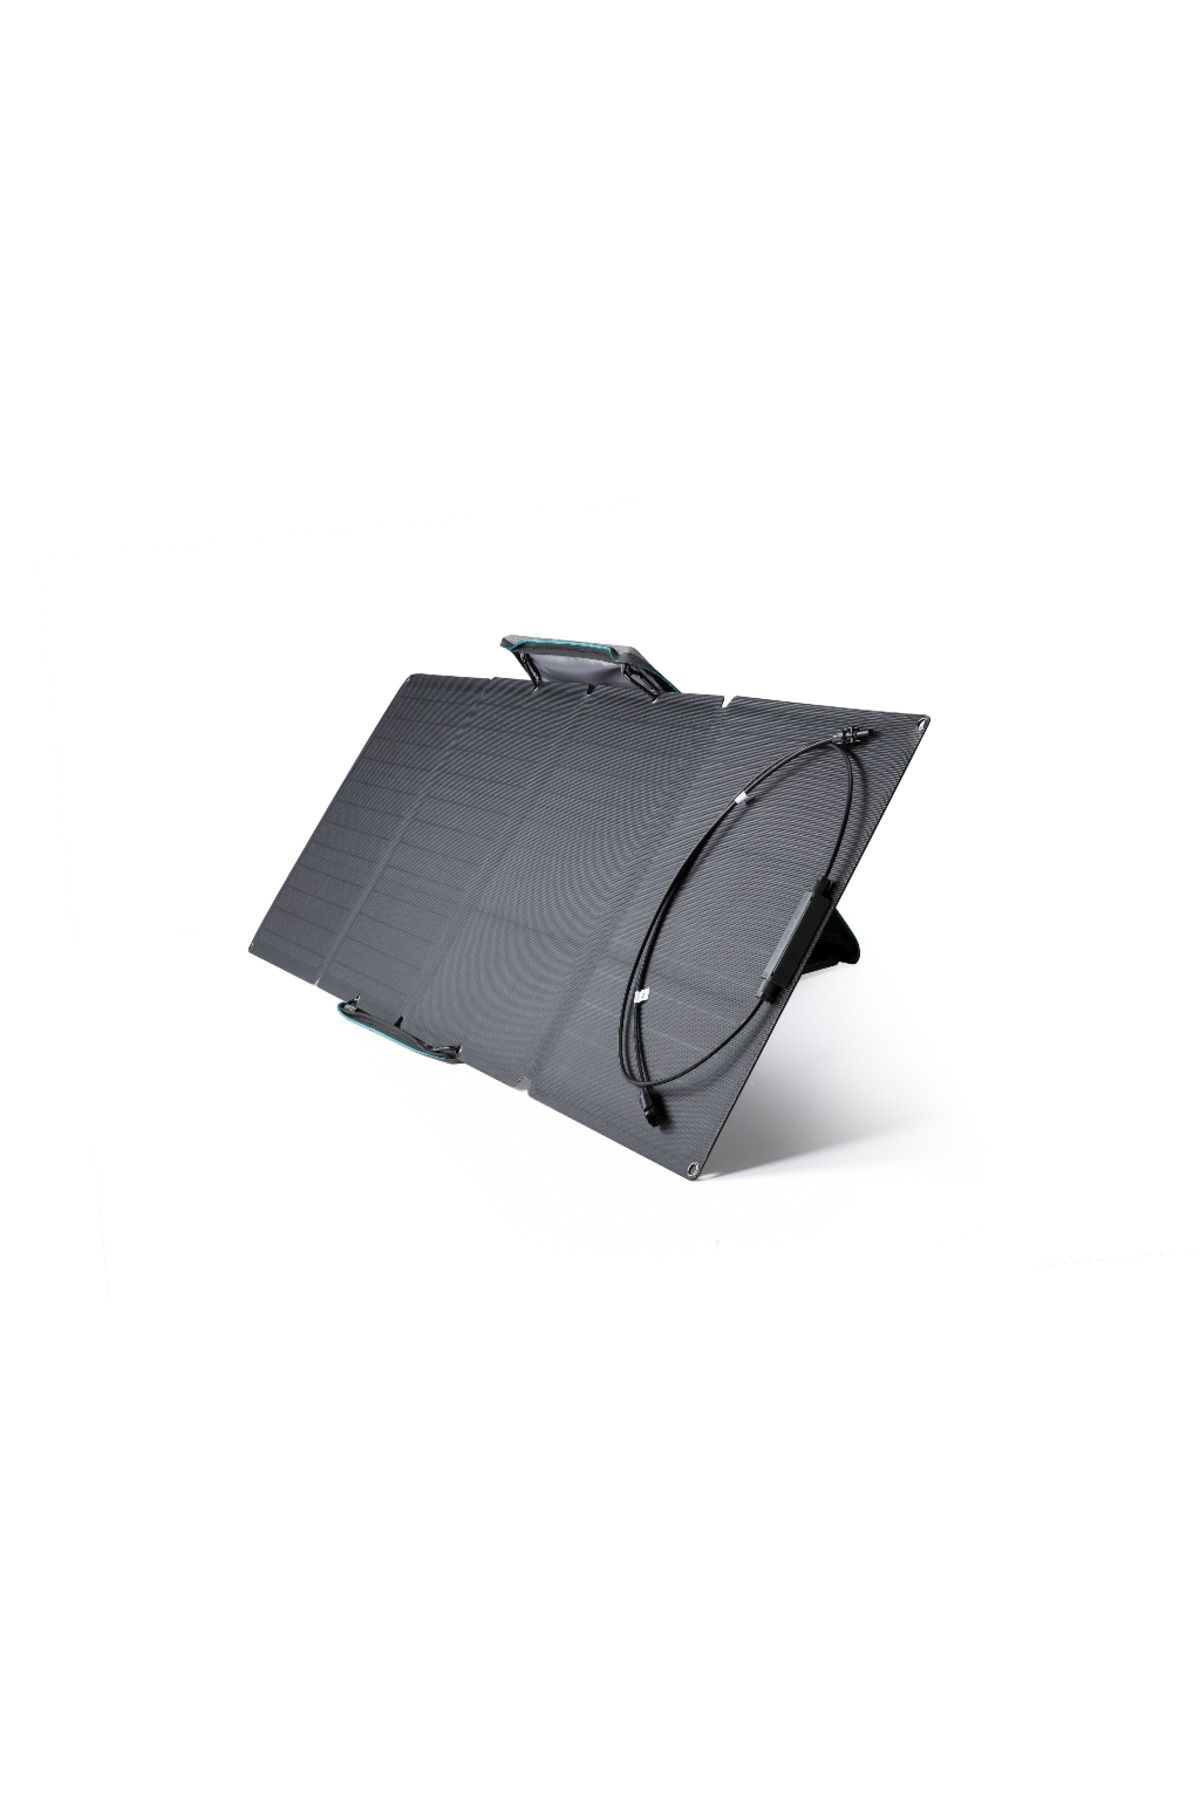 EcoFlow 110w Taşınabilir Güneş Paneli - ( Türkiye Garantili)